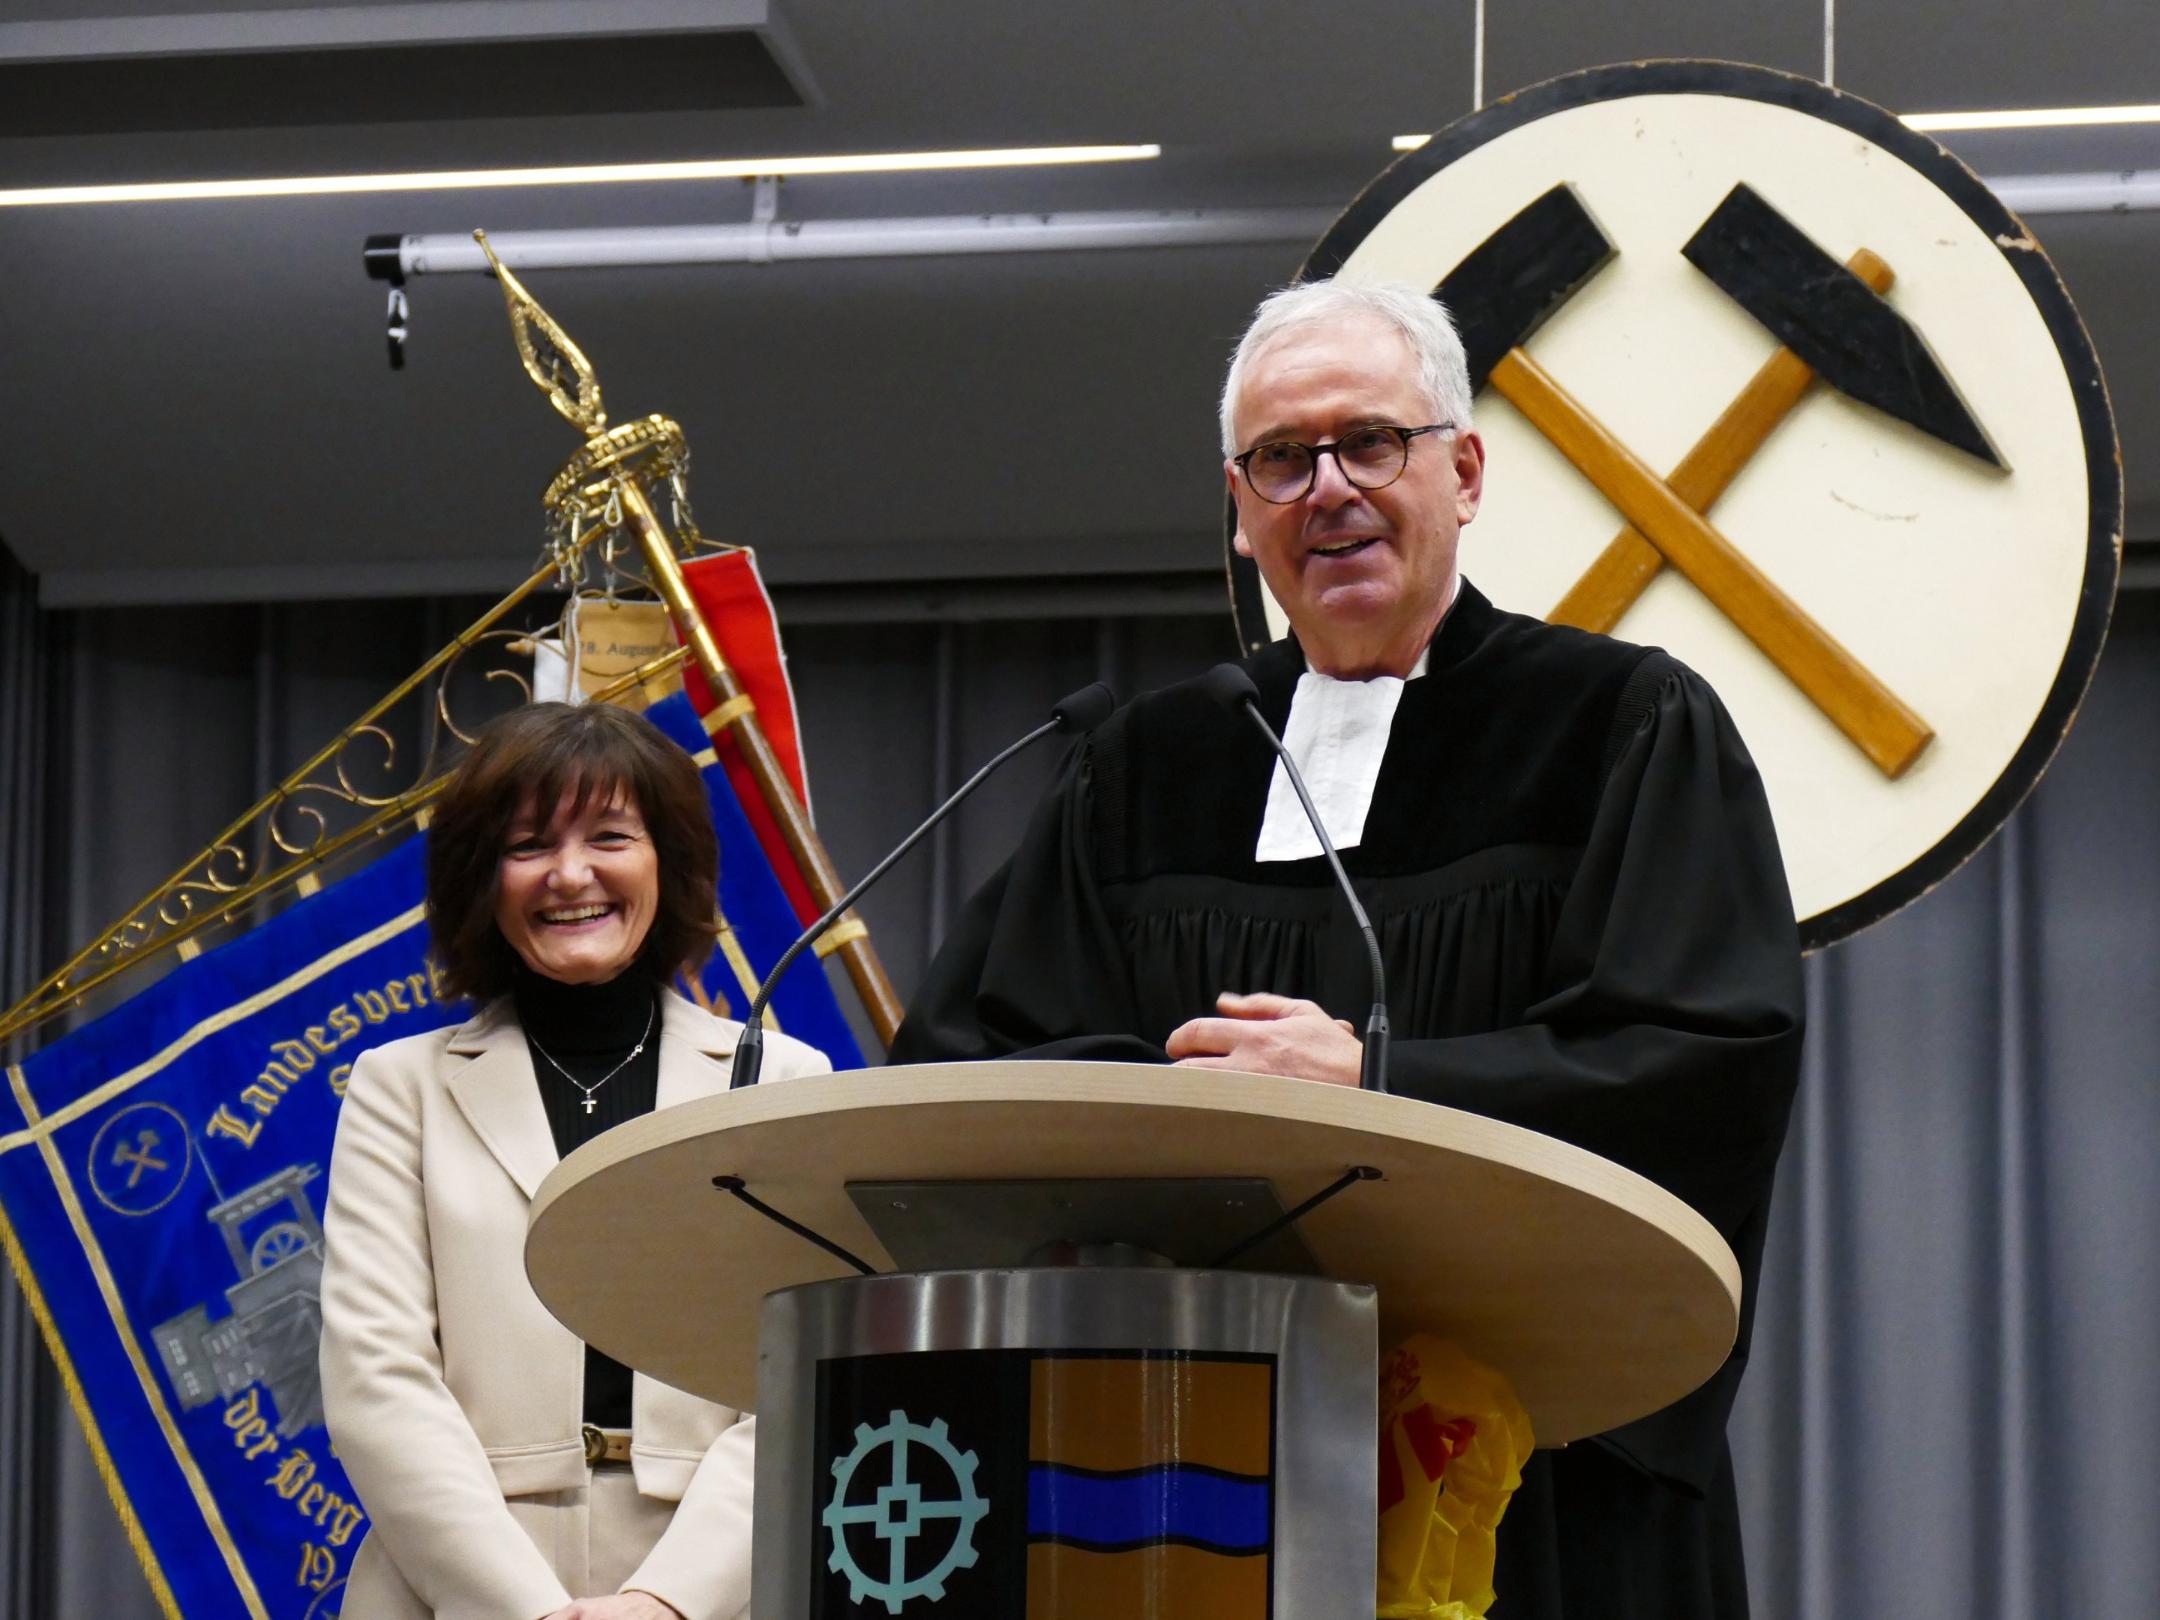 Hielten einen ökumenischen Wortgottesdienst: Ordinariatsdirektorin Katja Göbel und Kirchenrat Frank Hofmann.